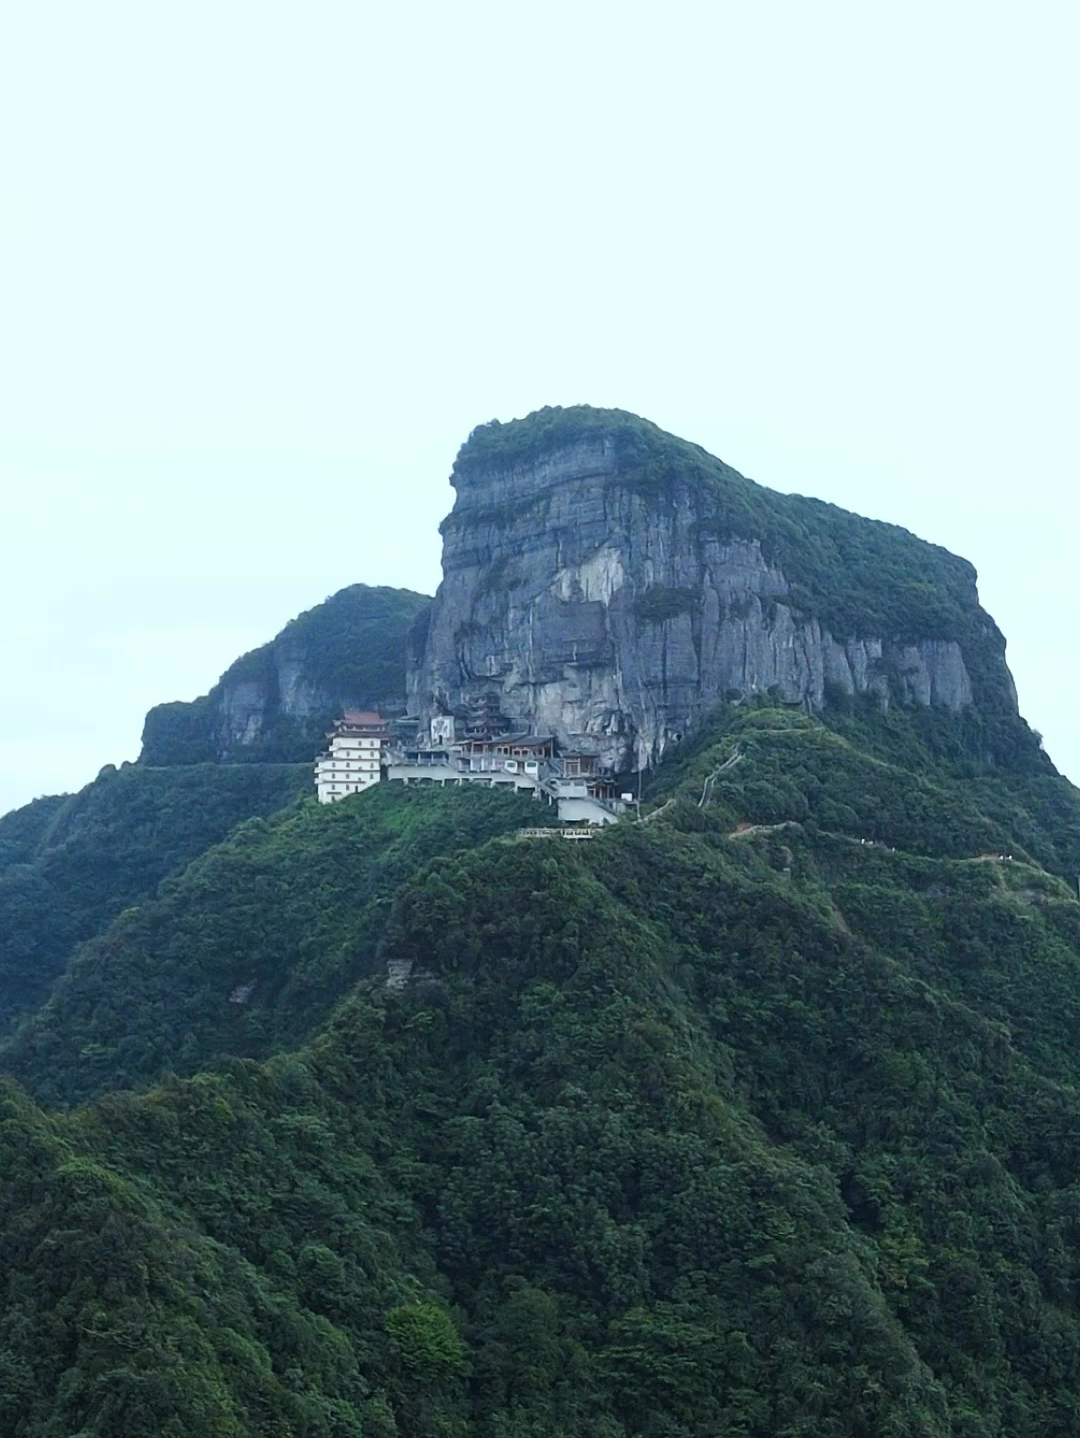 这里是黔北第一名山，海拔1795米，整座山顶犹如一巨大的佛祖头像，雅称“佛陀”。#旅行推荐官 #贵州